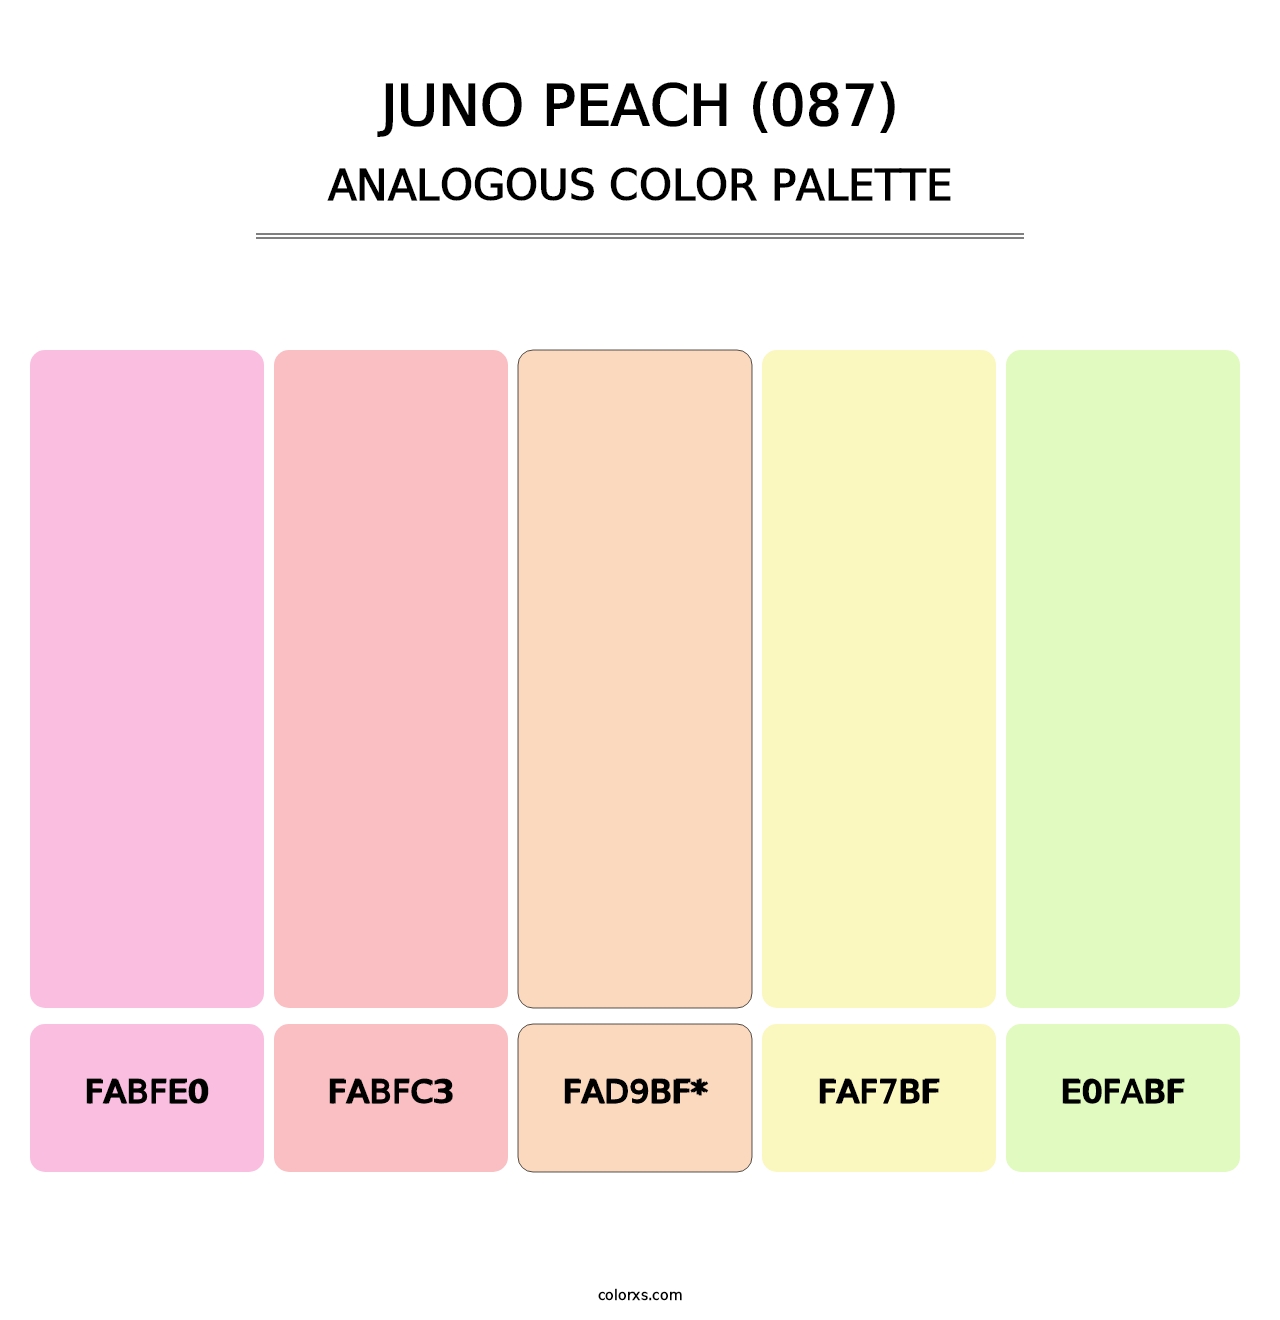 Juno Peach (087) - Analogous Color Palette